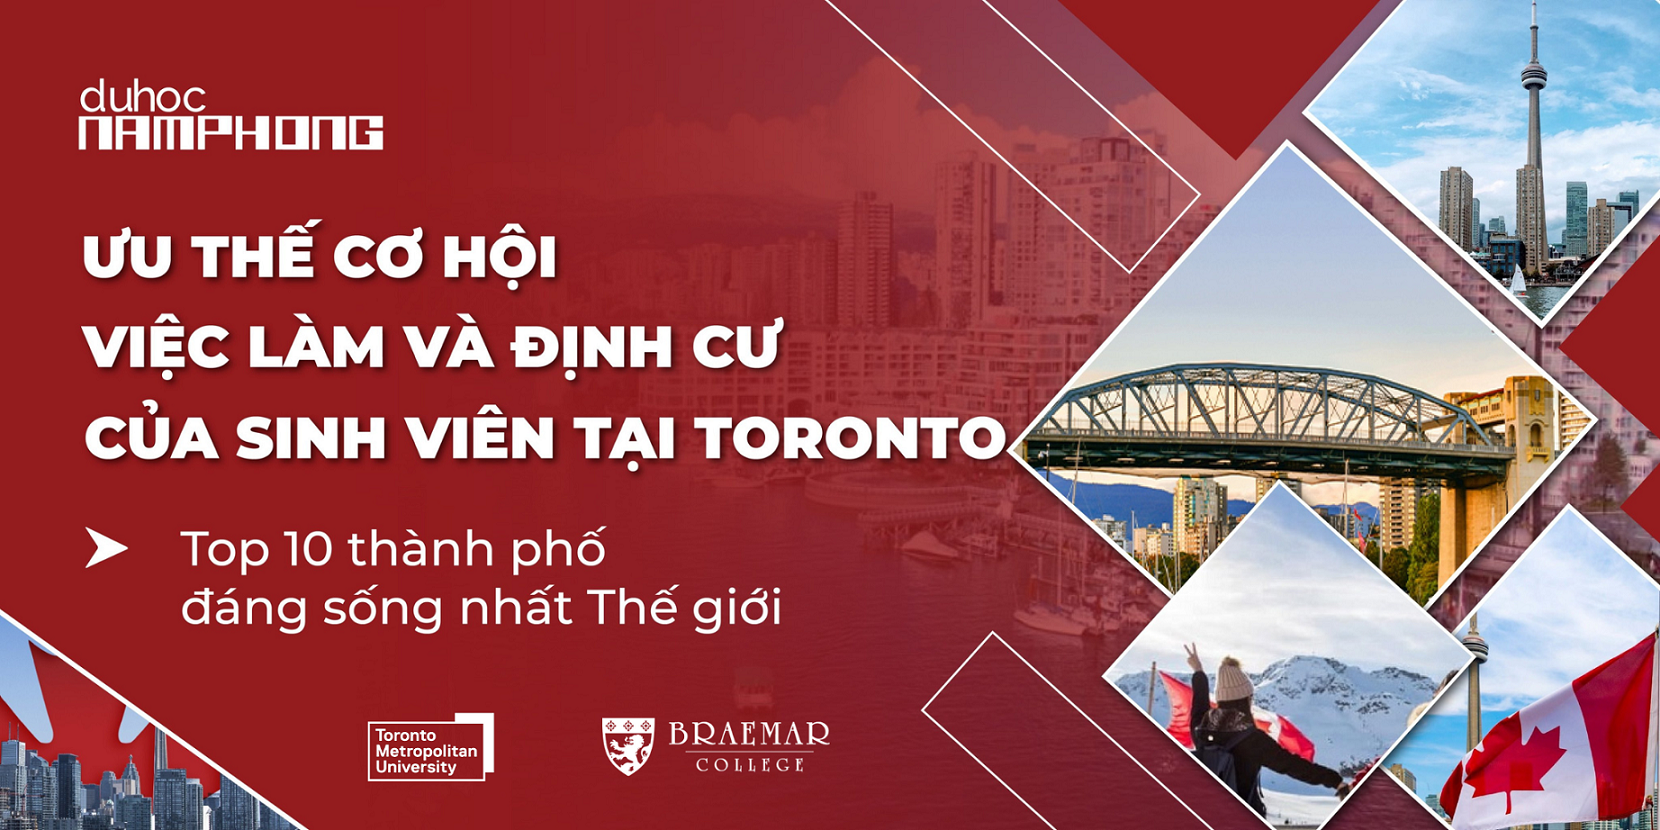 Ưu thế cơ hội việc làm và định cư của sinh viên tại Toronto - Top 10 thành phố đáng sống nhất thế giới.